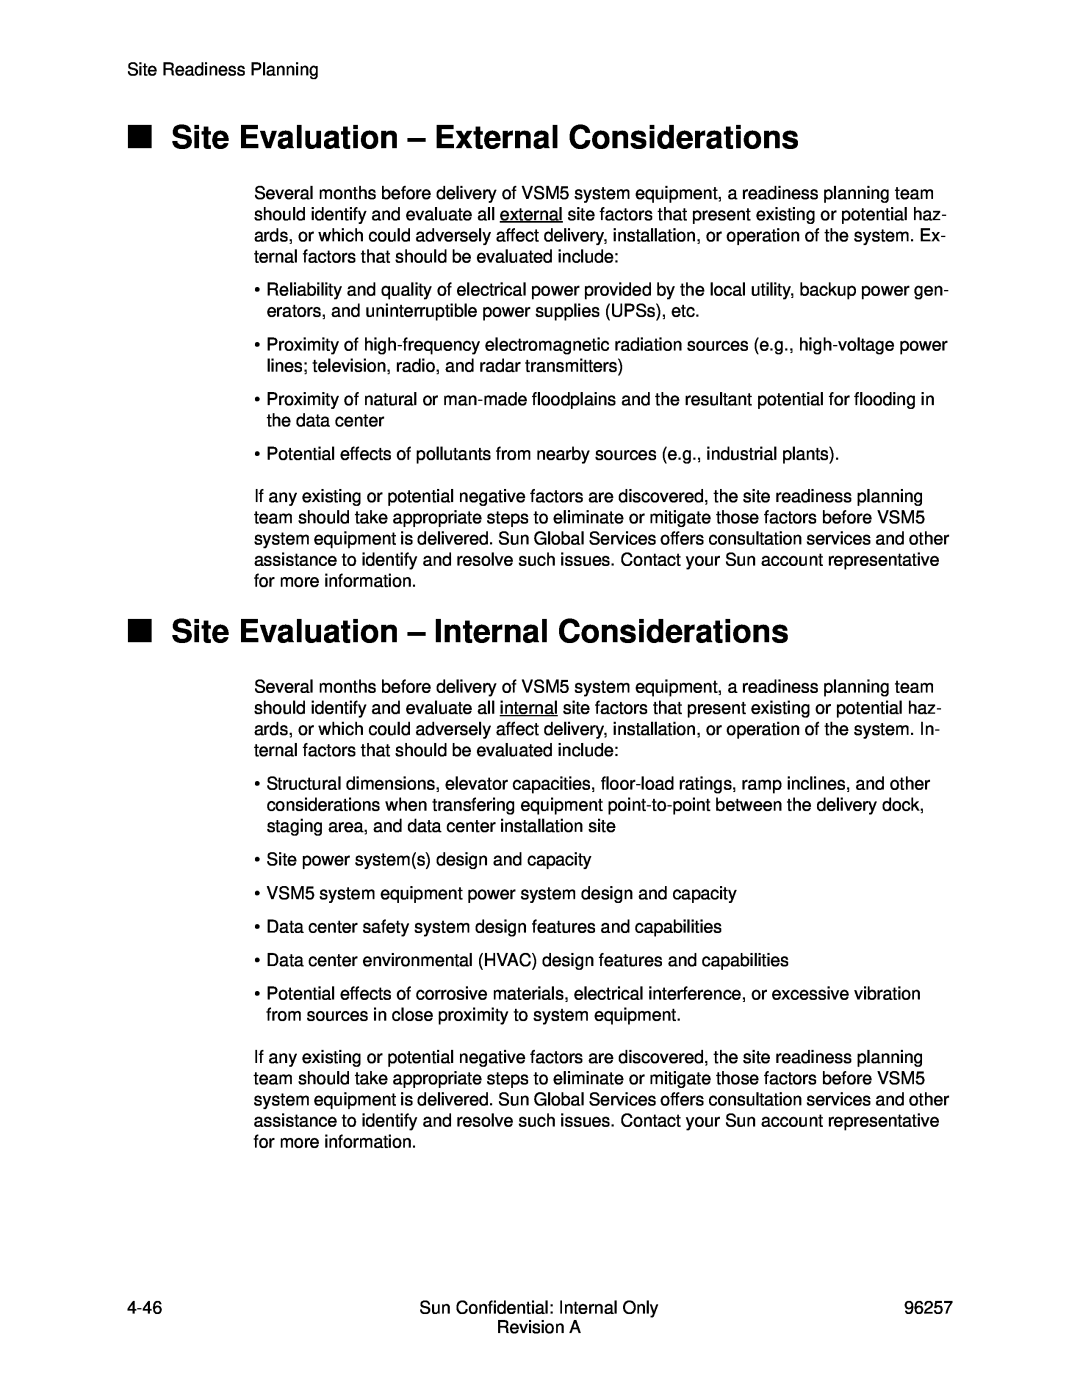 Sun Microsystems 96257 manual Site Evaluation - External Considerations, Site Evaluation - Internal Considerations 